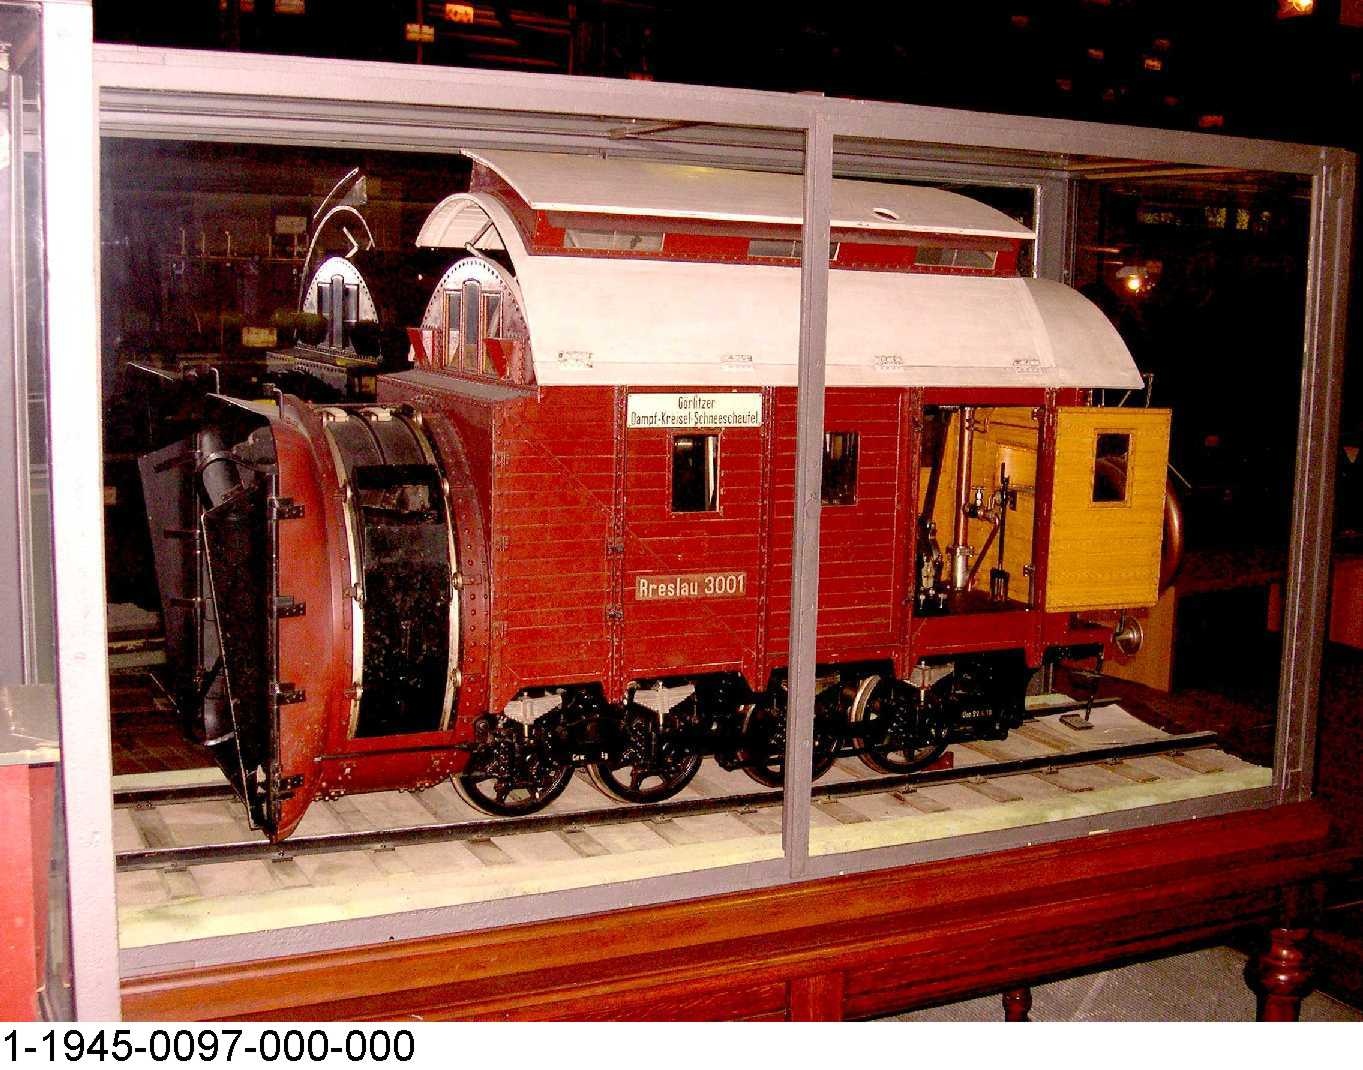 Dampfschneeschleuder "Breslau 3001", Modell 1:5 (Stiftung Deutsches Technikmuseum Berlin CC0)